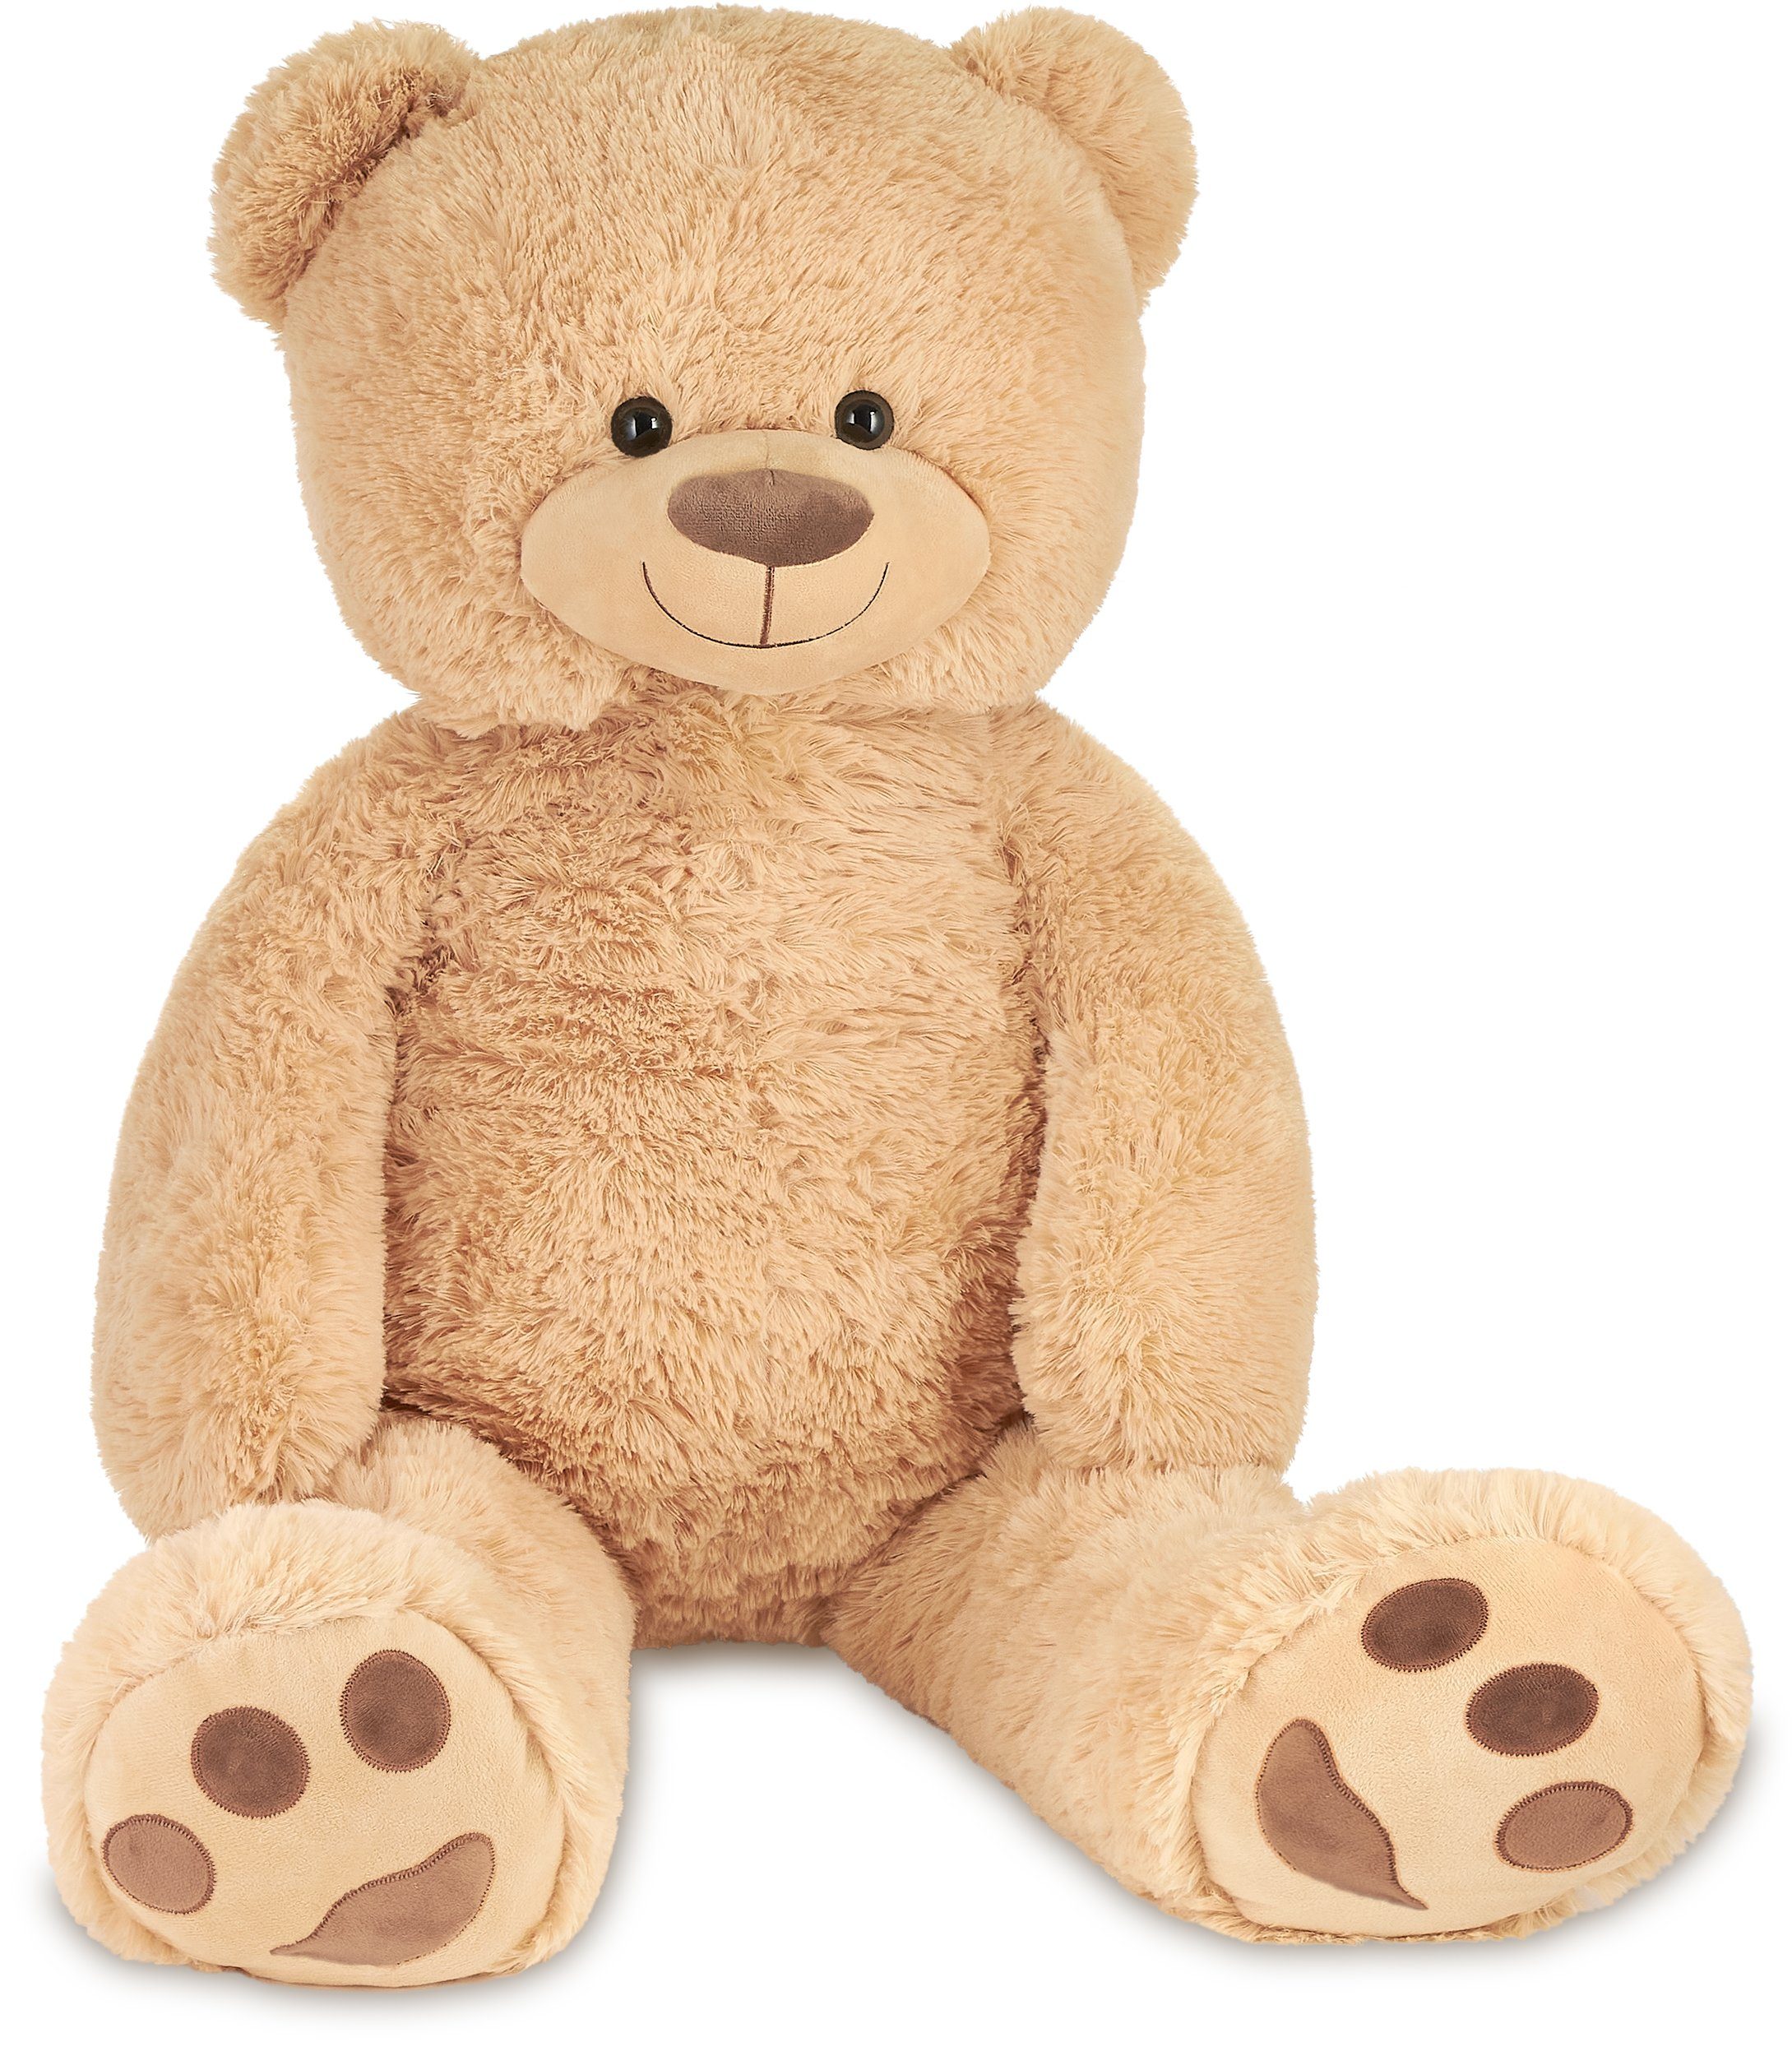 Simba Großer XL Plüschteddy 70 cm Teddy Bär Plüschbär Teddybär Geschenk Geburt 